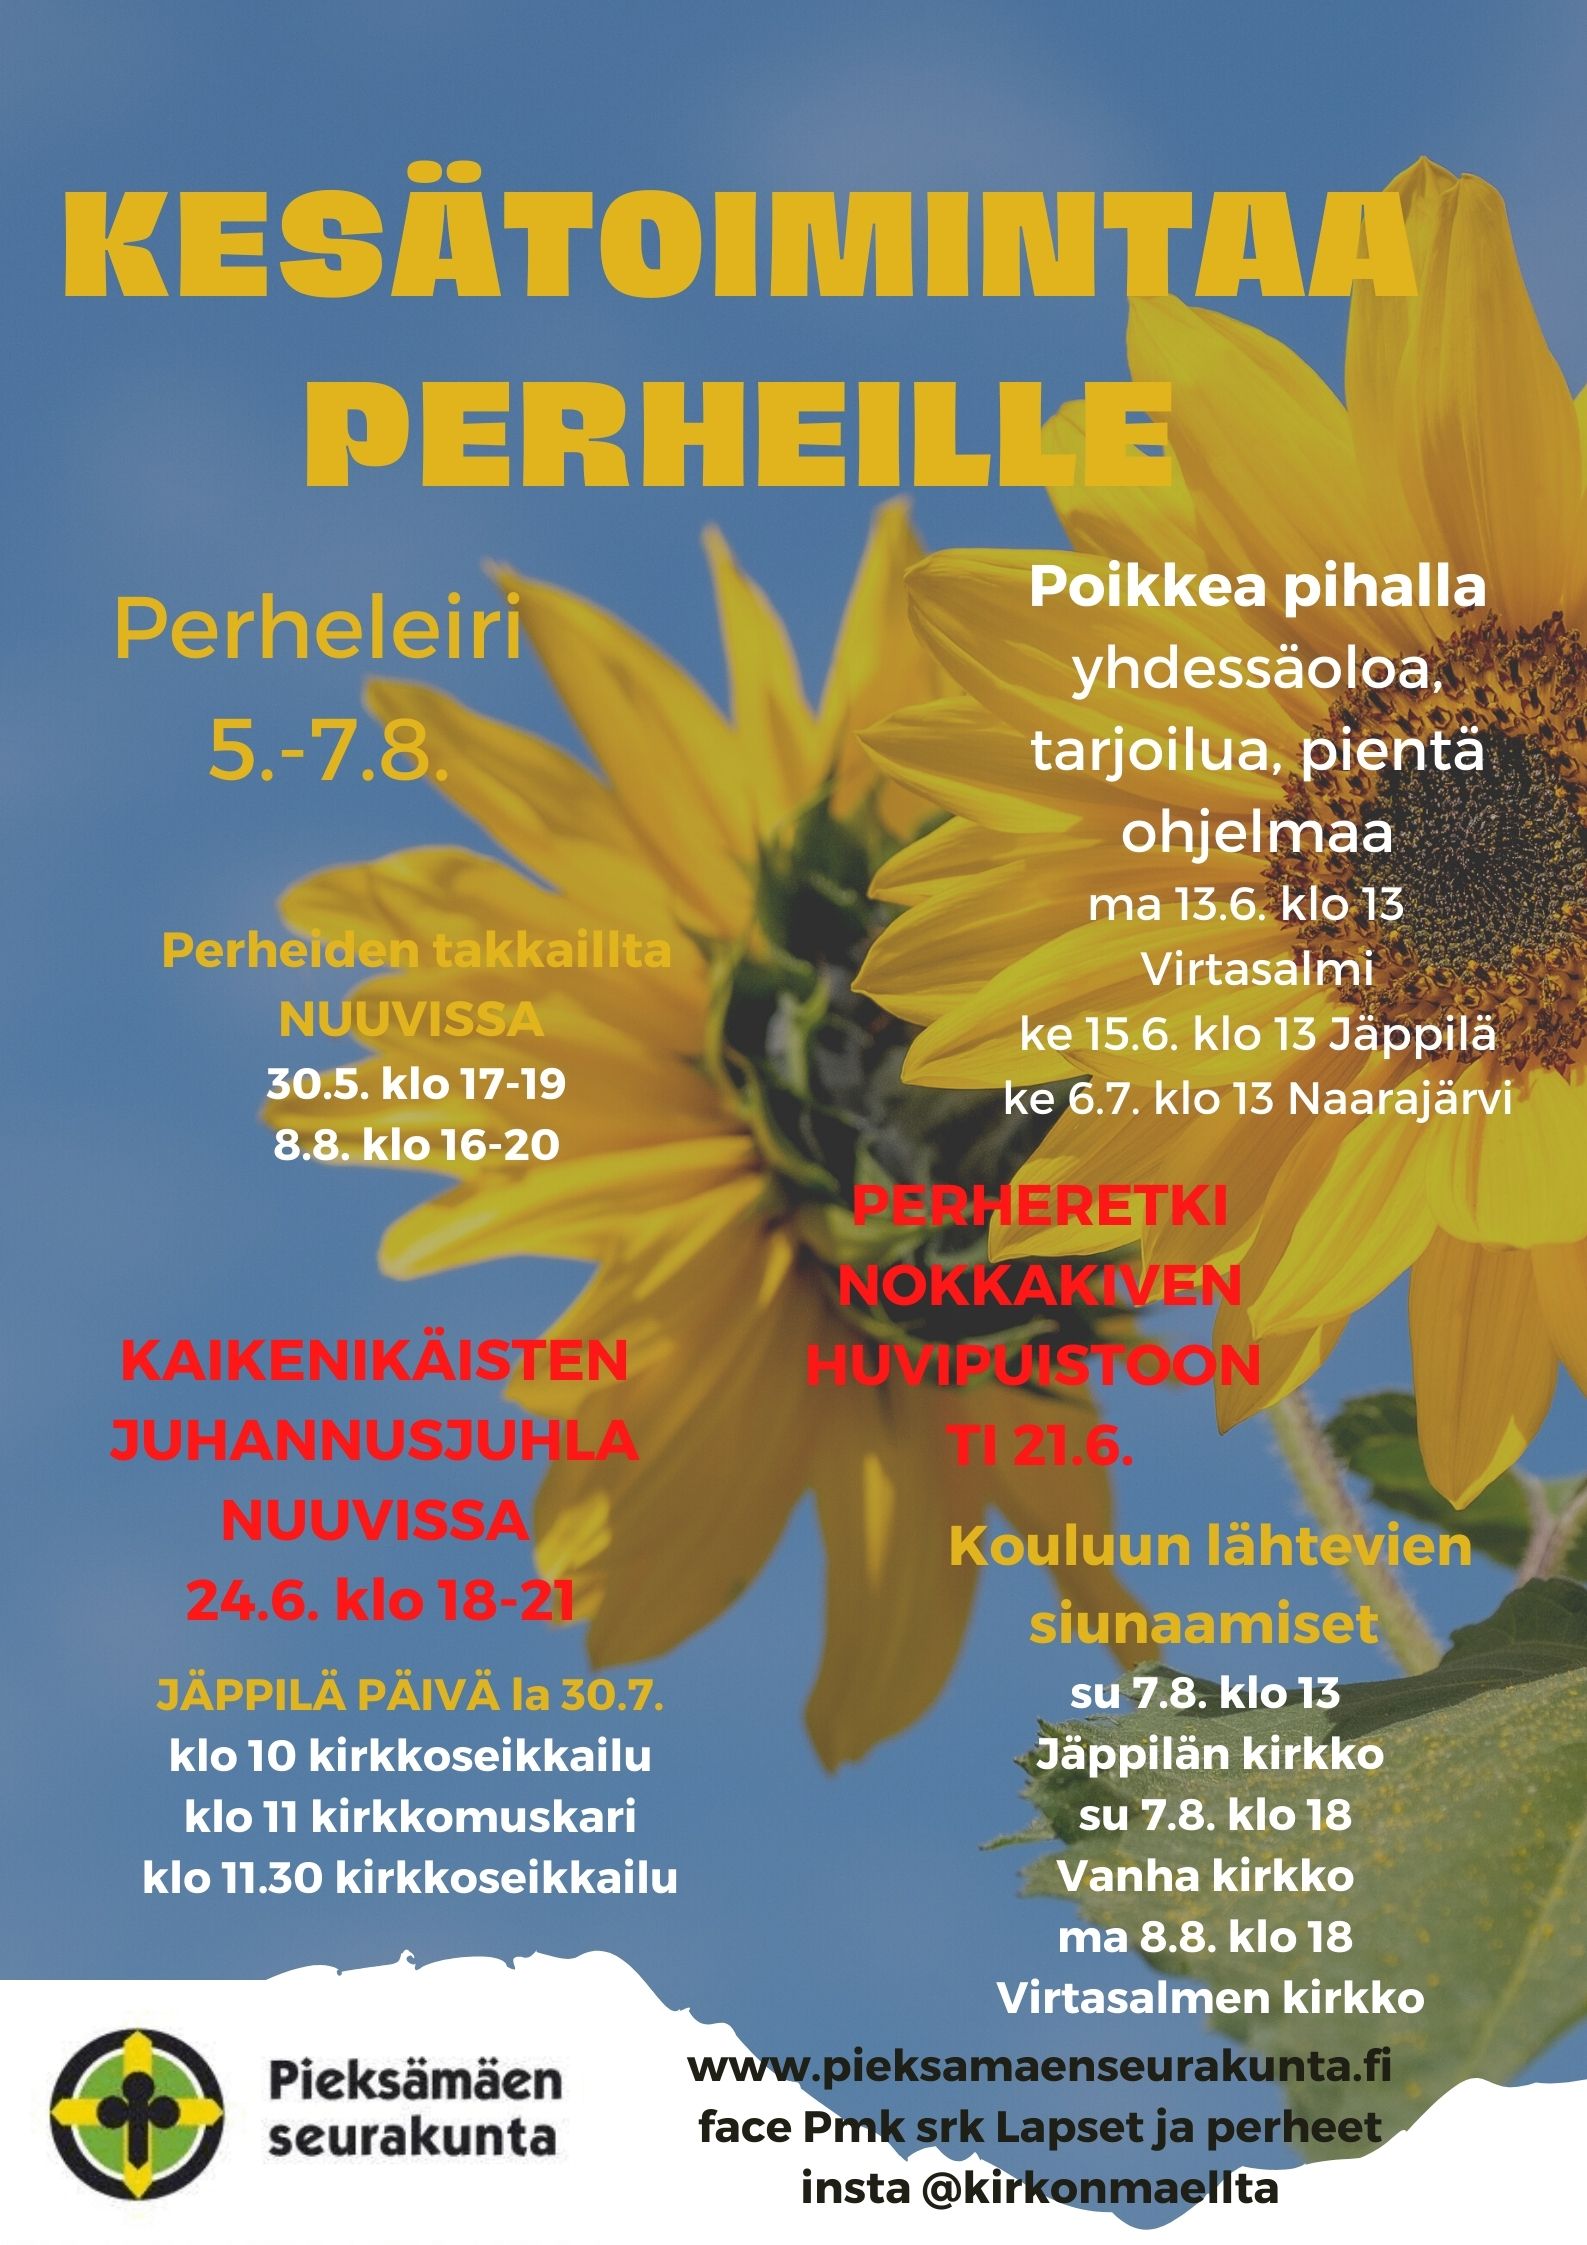 kuvana auringonkukat sinisellä taustalla, tekstinä kesätoimintaa perheille